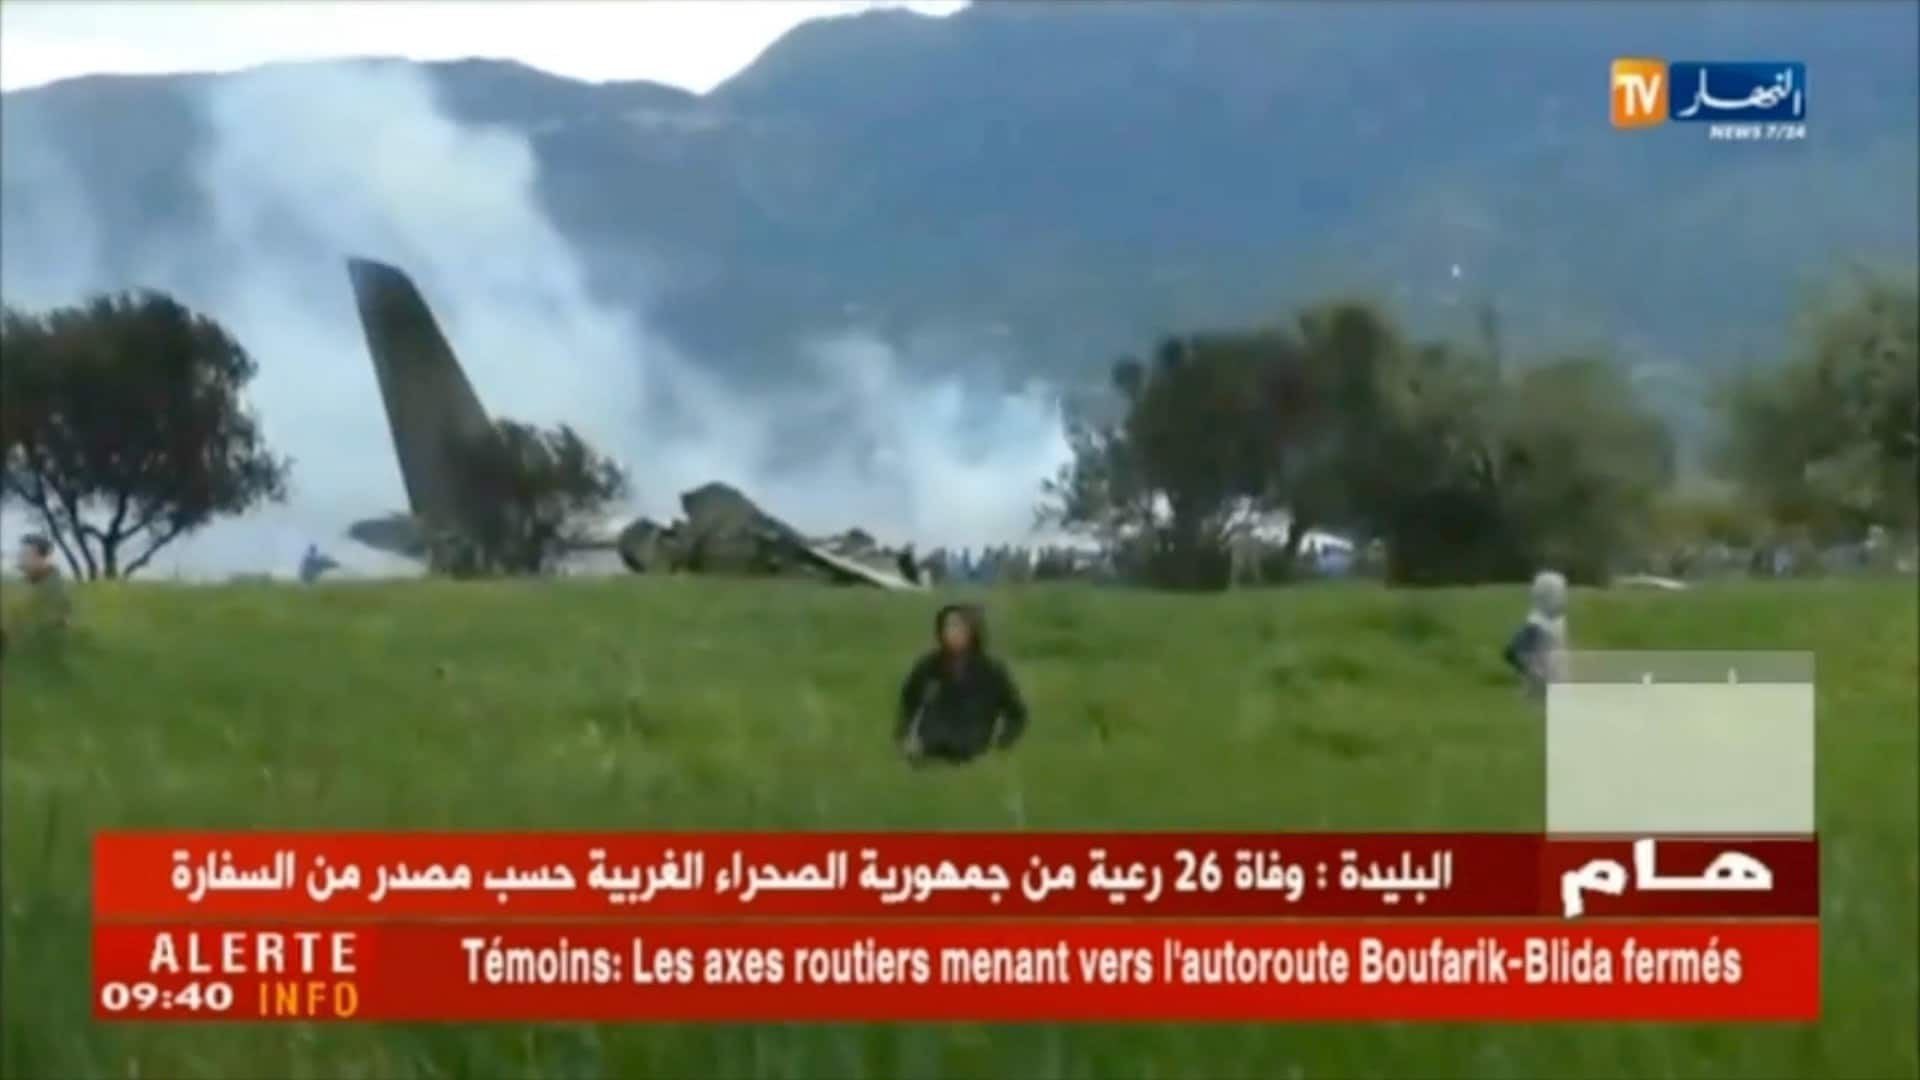 Legervliegtuig stort neer in Algerije: dodentol opgelopen tot 257